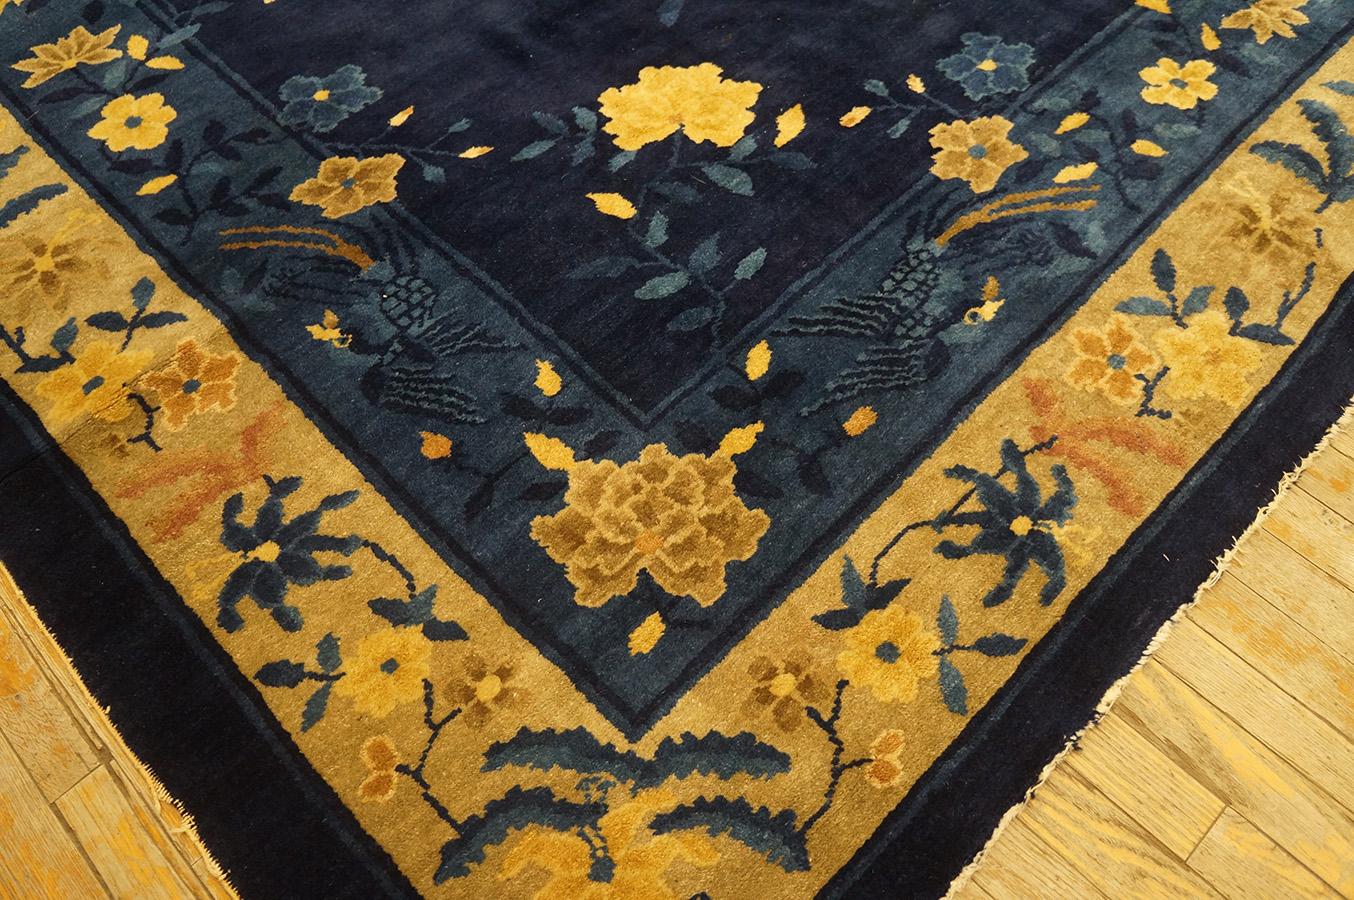 Chinesischer Pekinger Teppich des frühen 20. Jahrhunderts ( 9' x 11'6'' - 275 x 350)  (Frühes 20. Jahrhundert) im Angebot